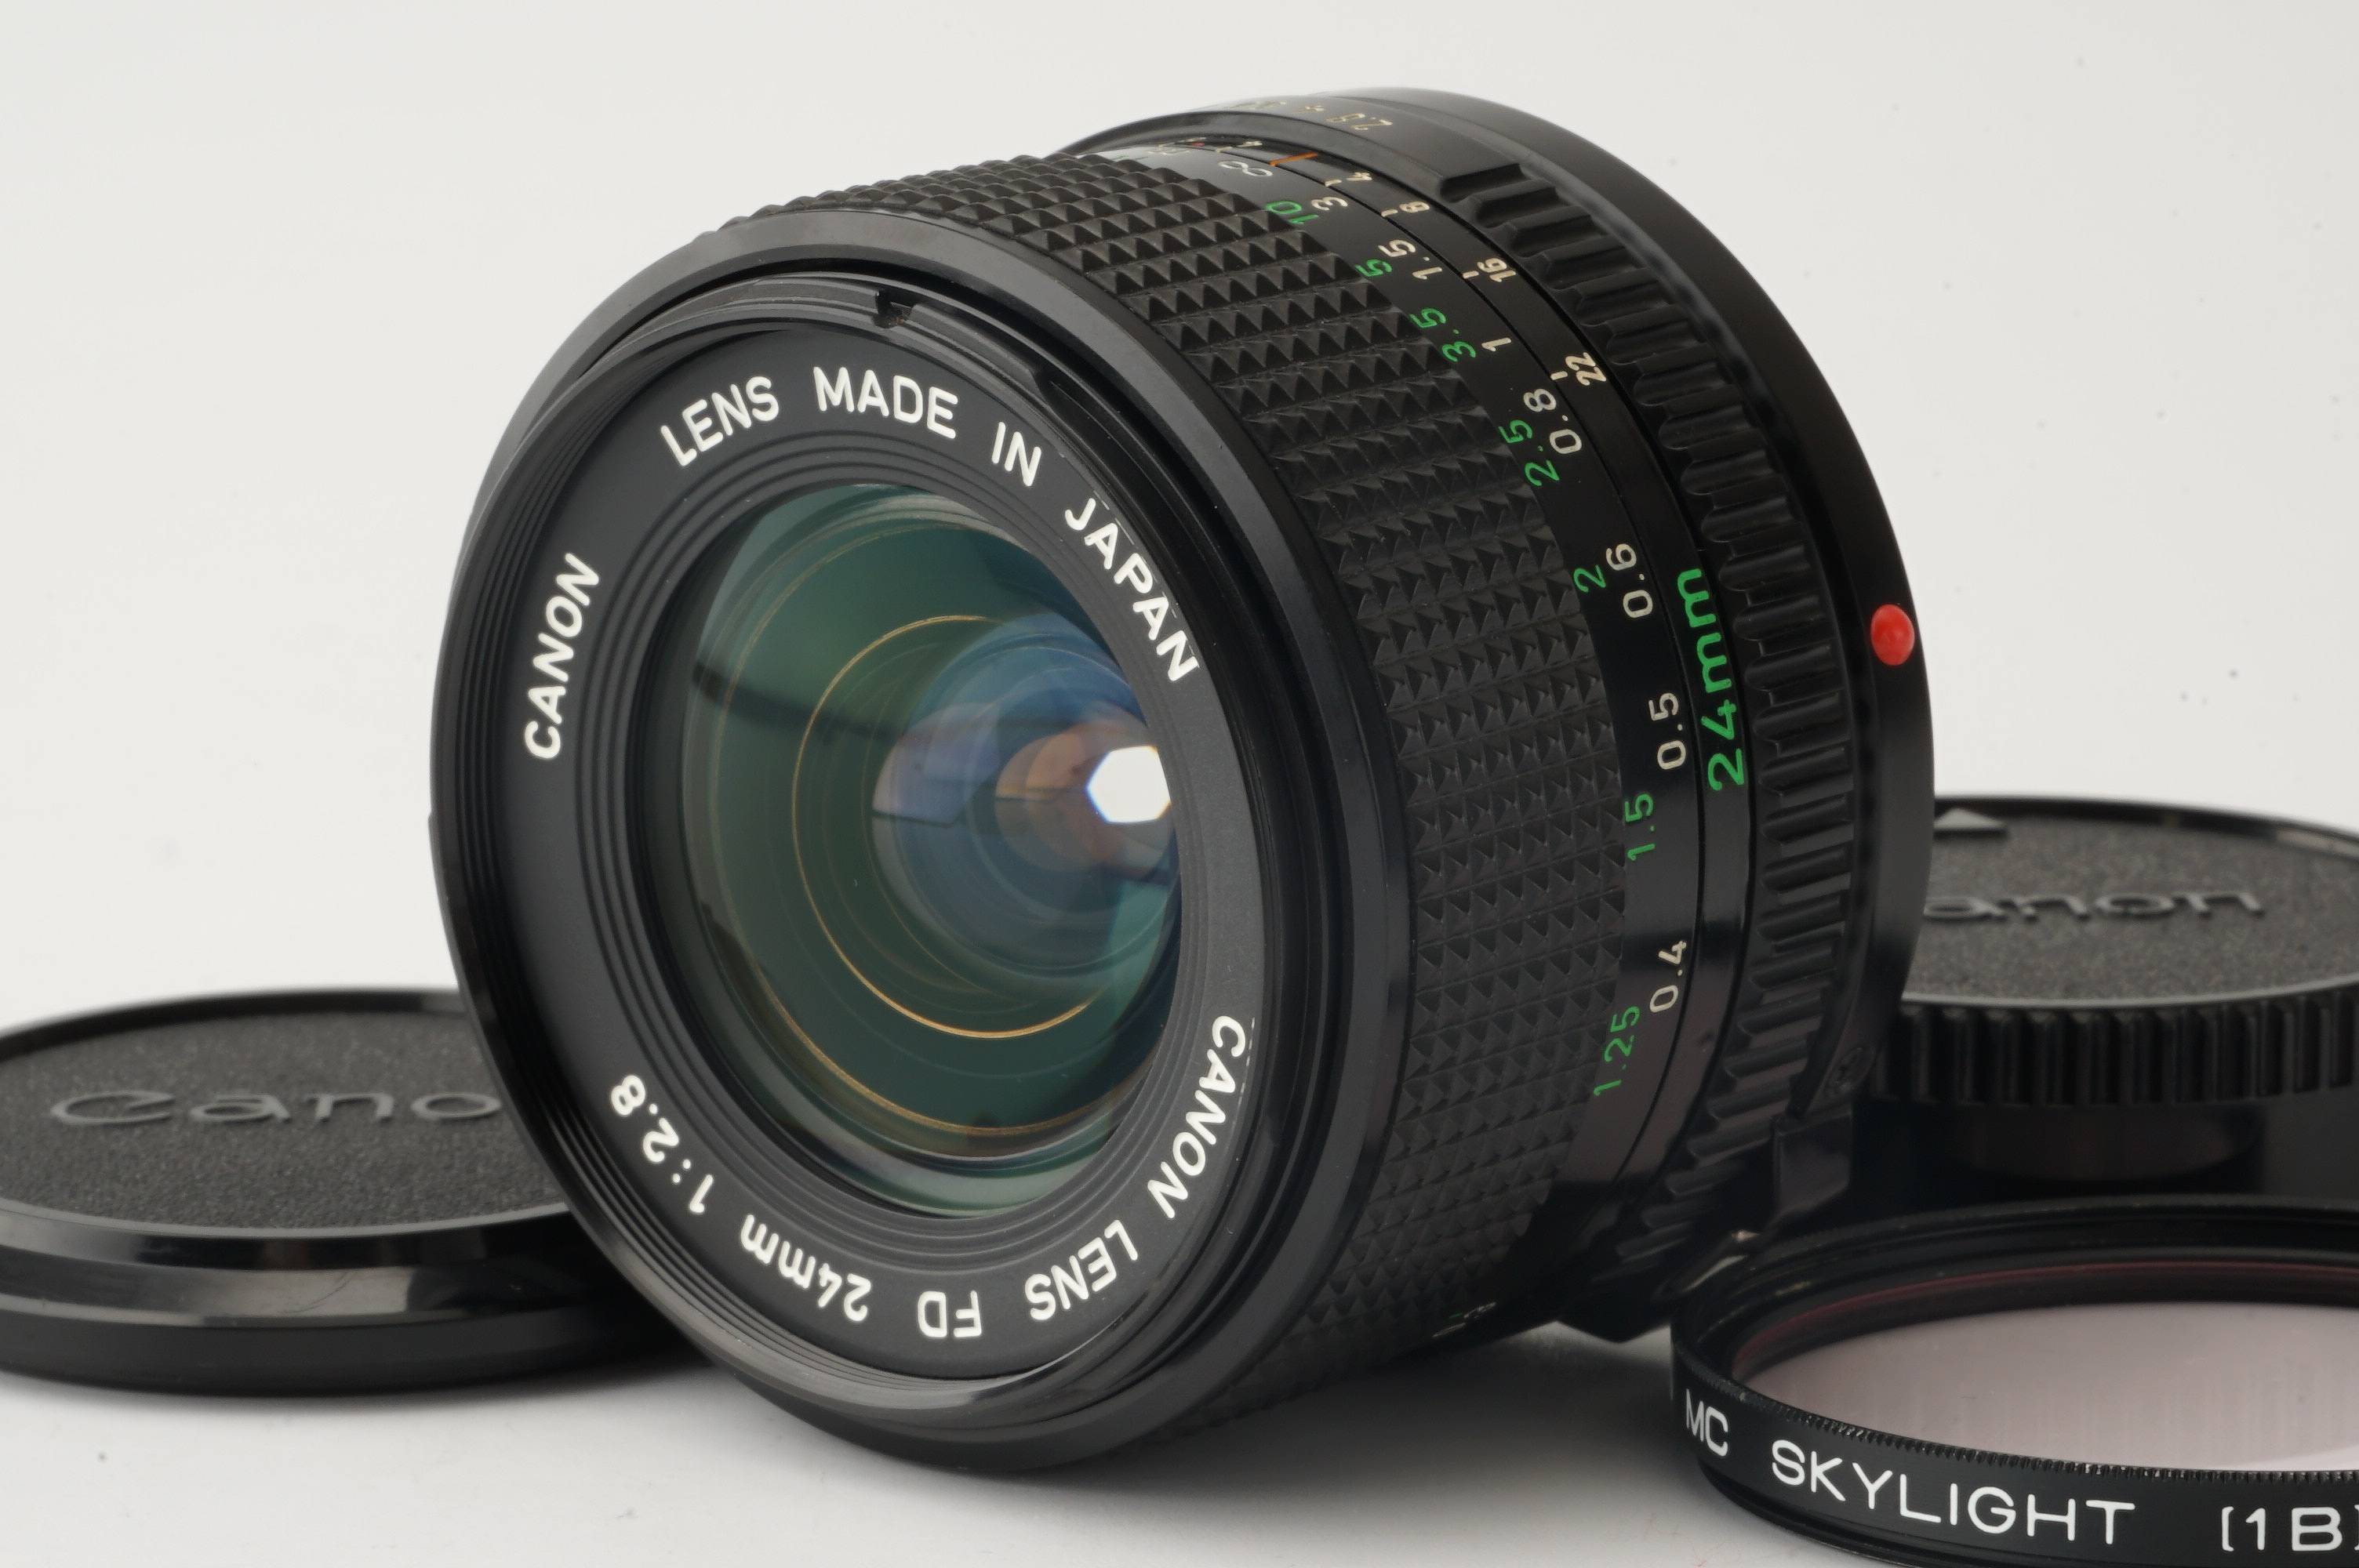 キヤノン Canon New FD 24mm F2.8